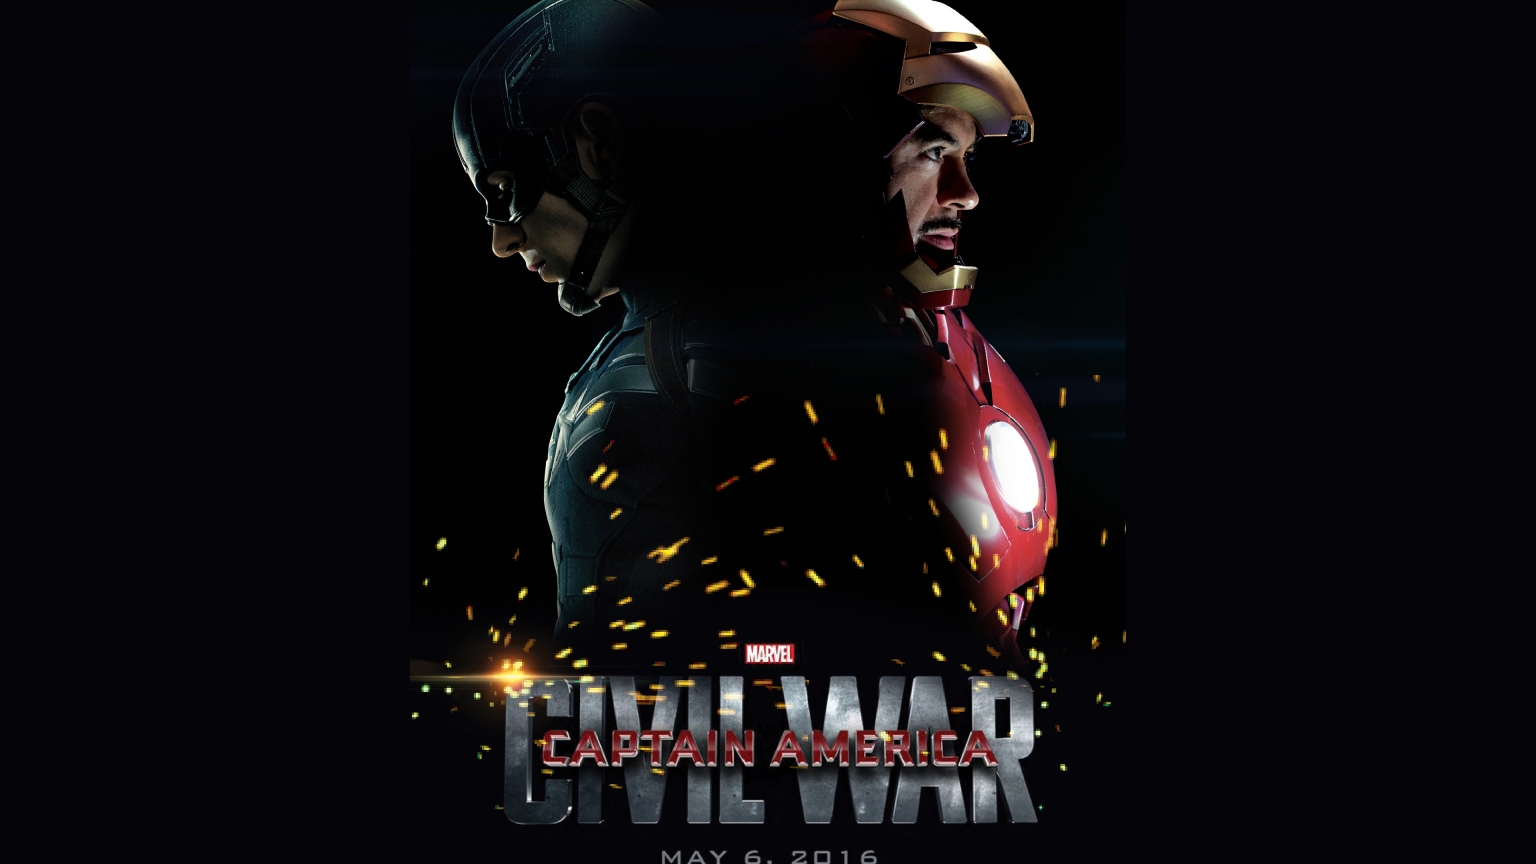 Captain America Civil War 2016 for 1536 x 864 HDTV resolution